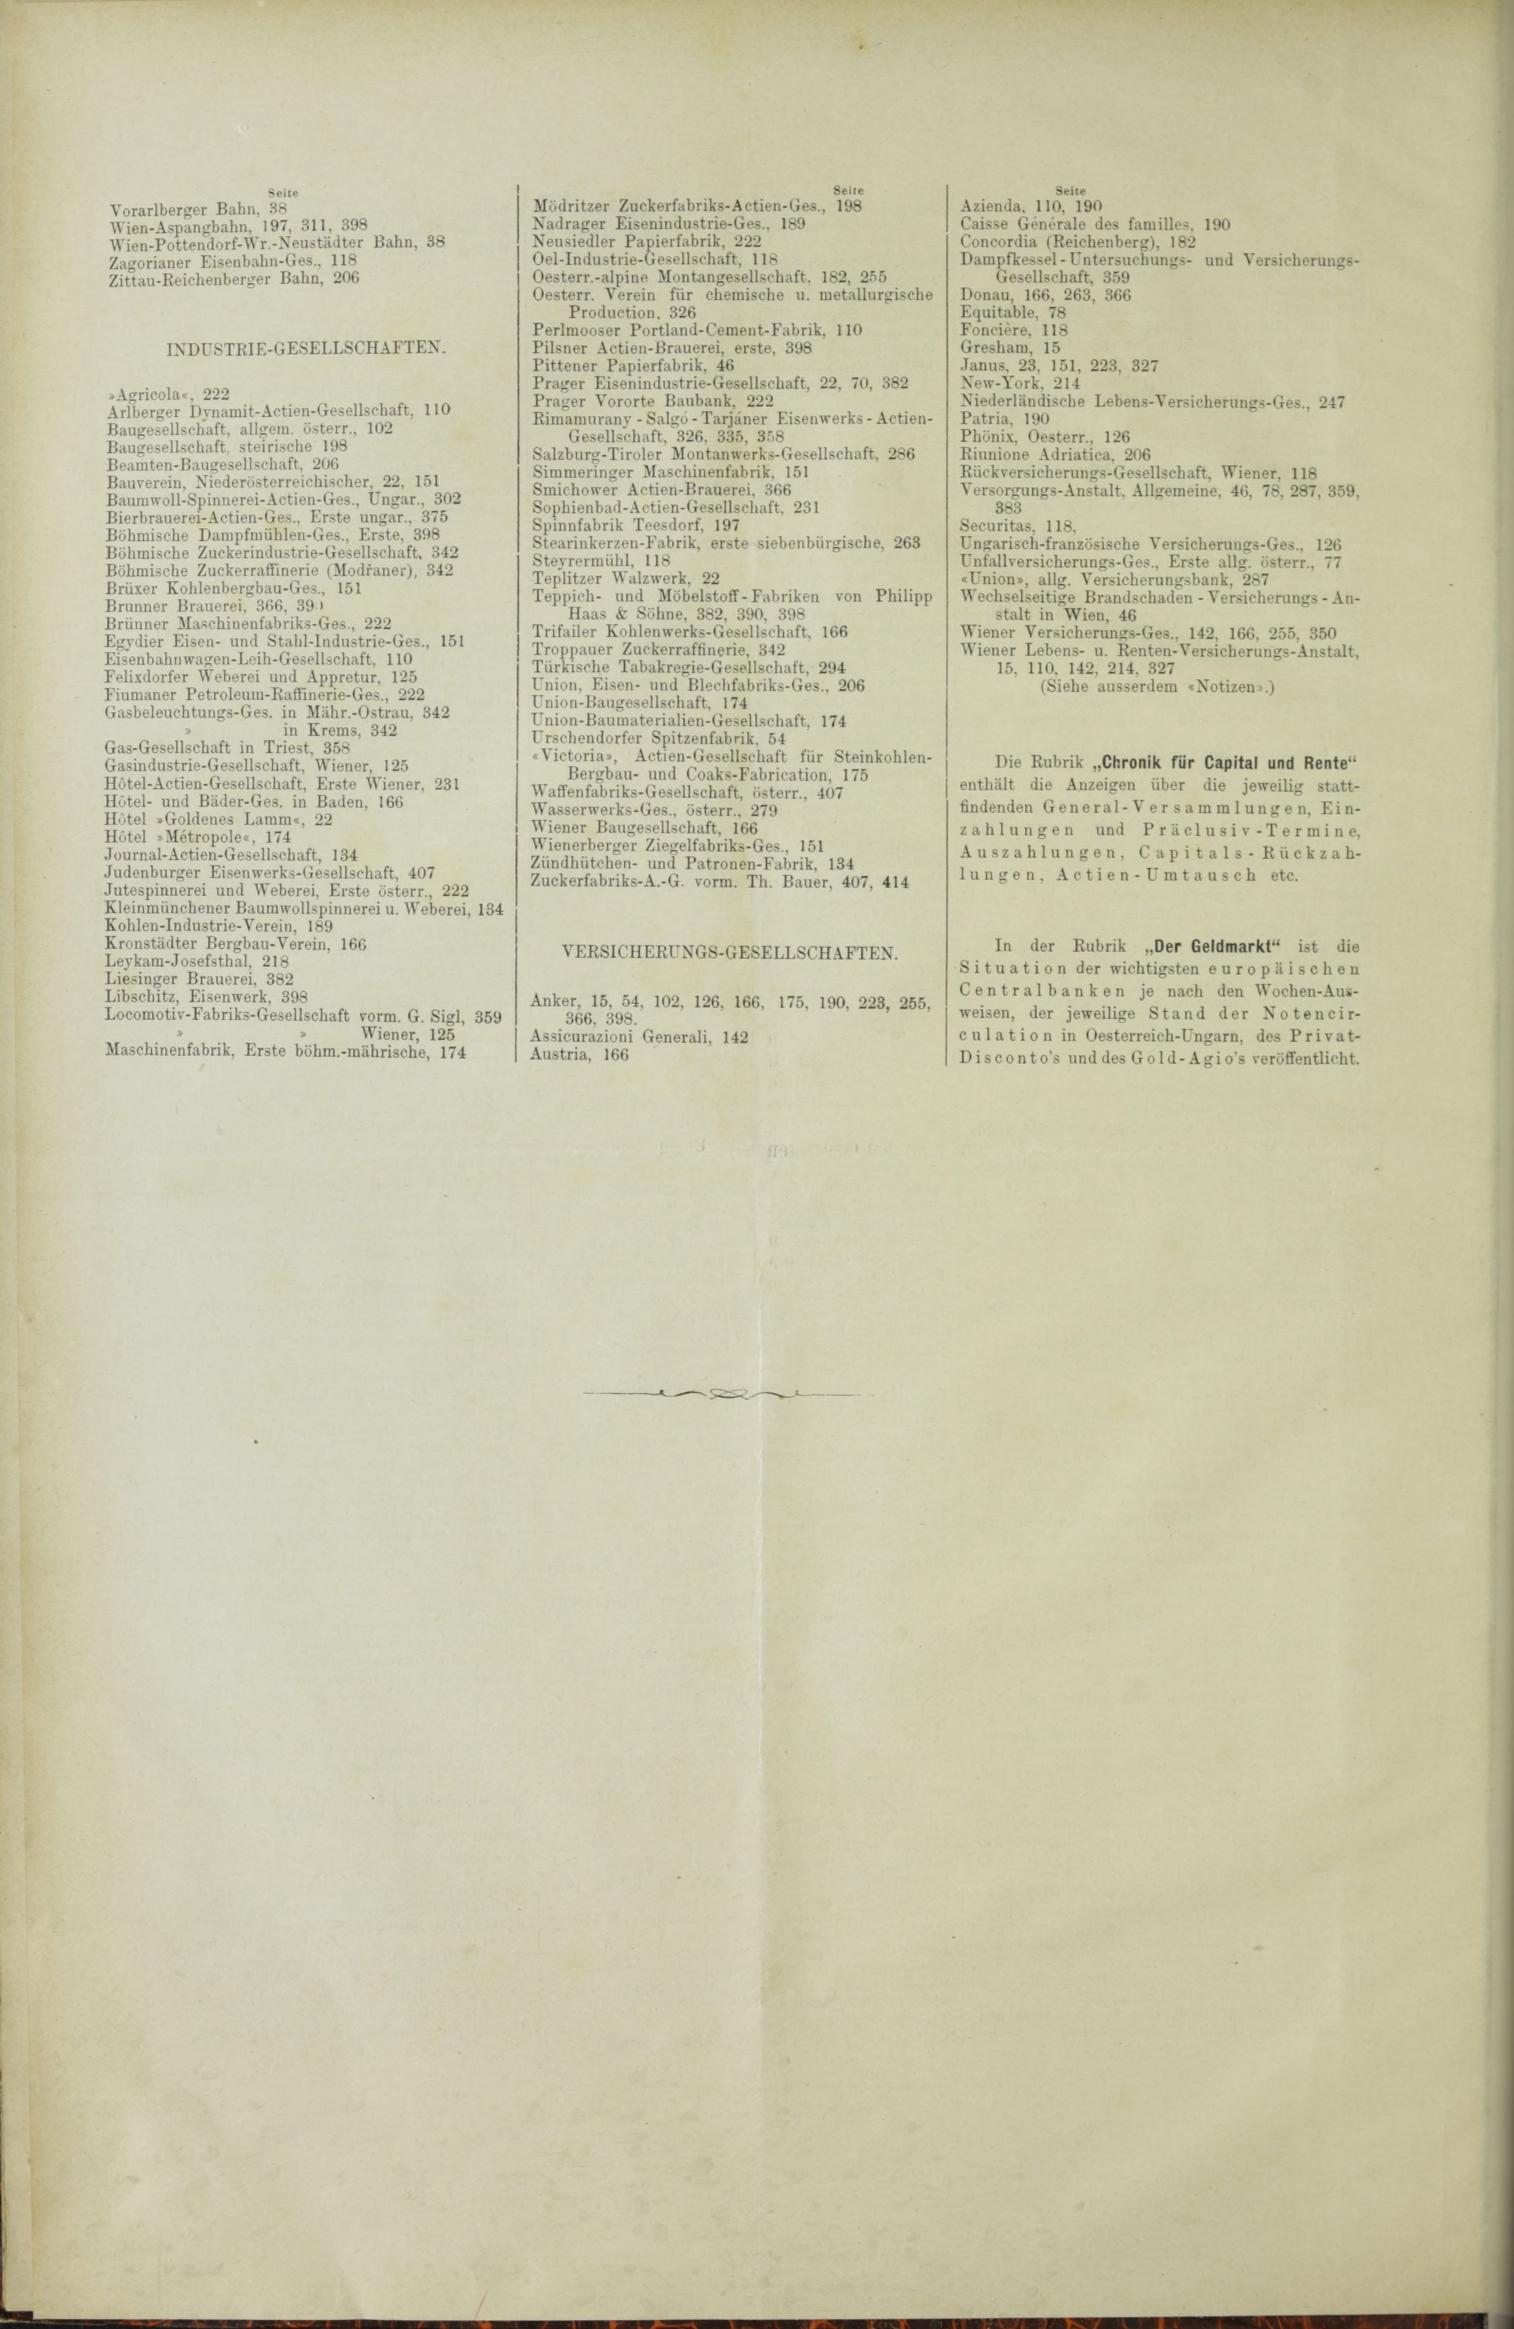 Der Tresor 29.04.1886 - Seite 12